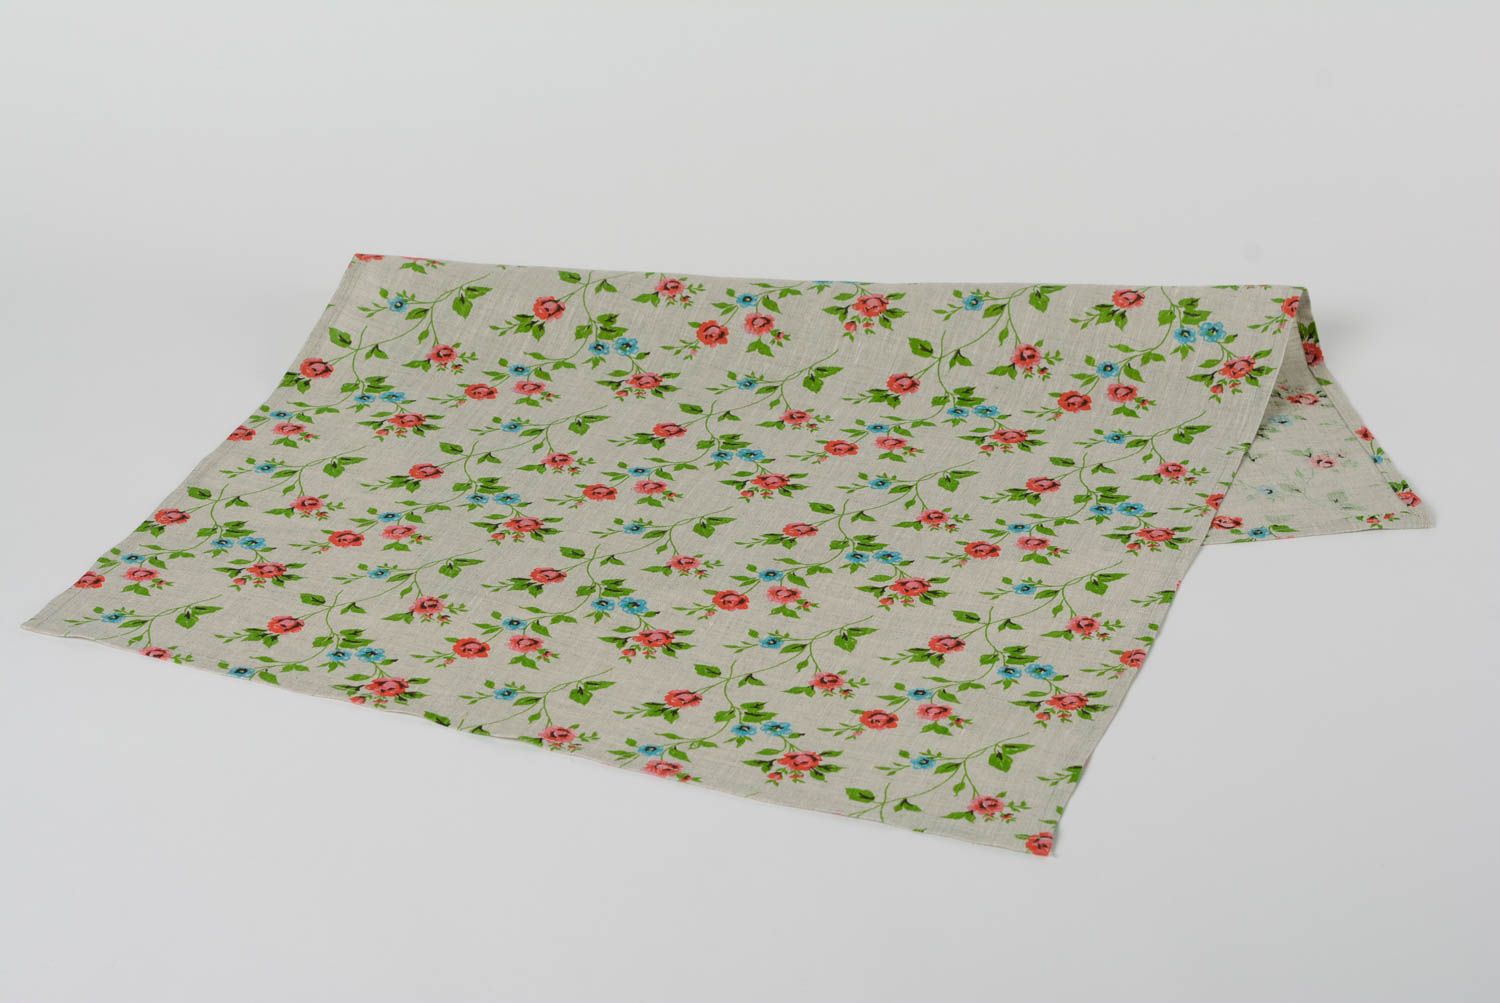 Petite serviette de cuisine en tissu de lin grise aux motifs floraux fate main  photo 2